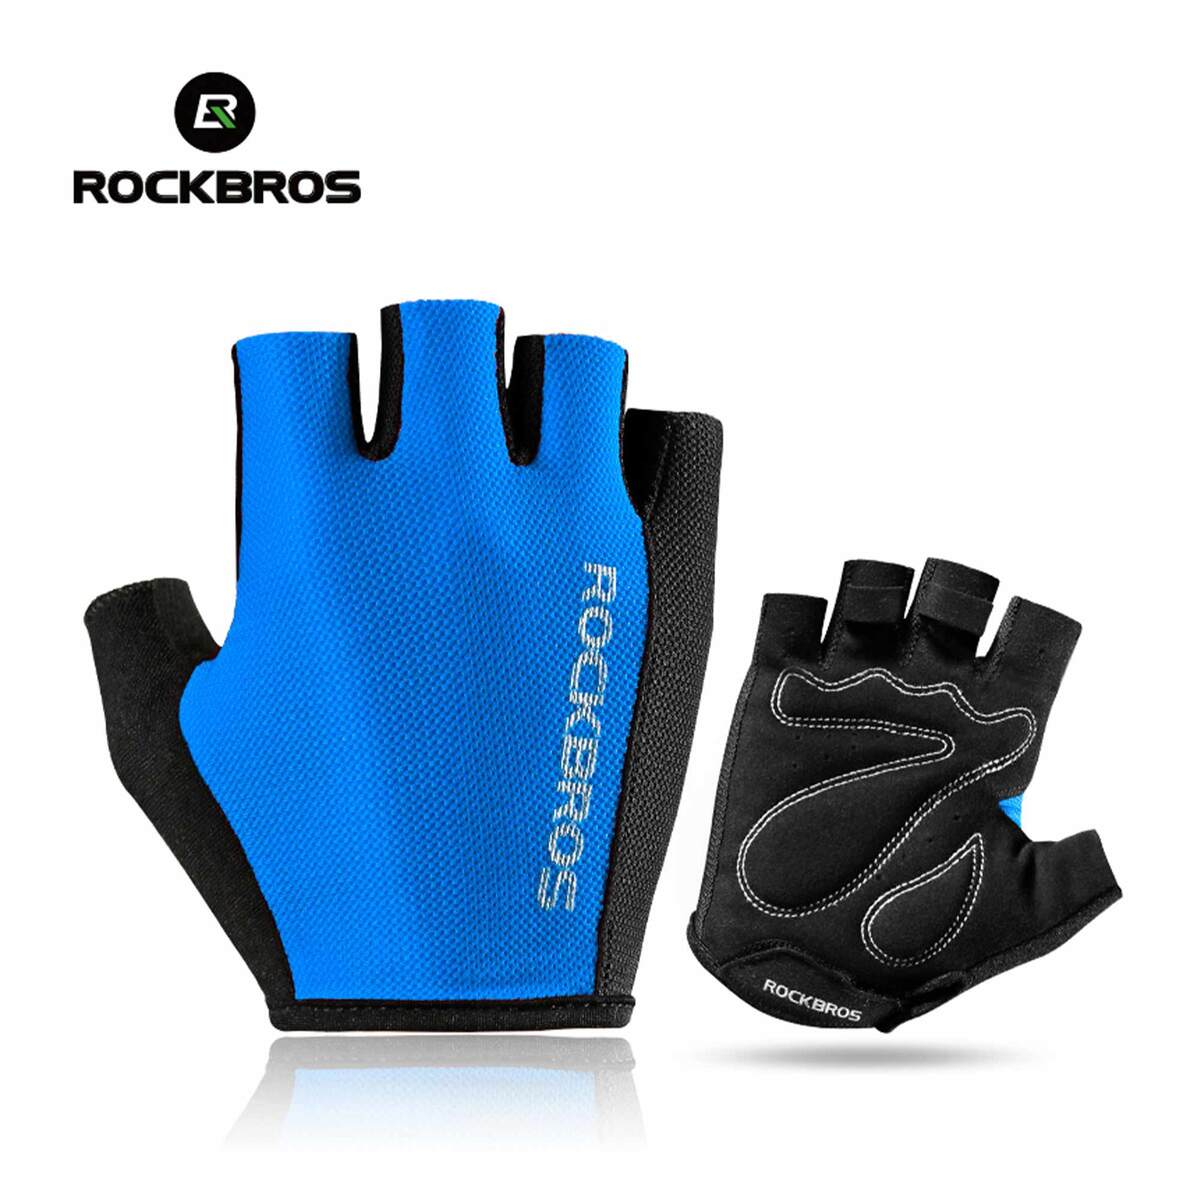 ROCKBROS Half Finger Cycling Gloves Blue S099BL Large